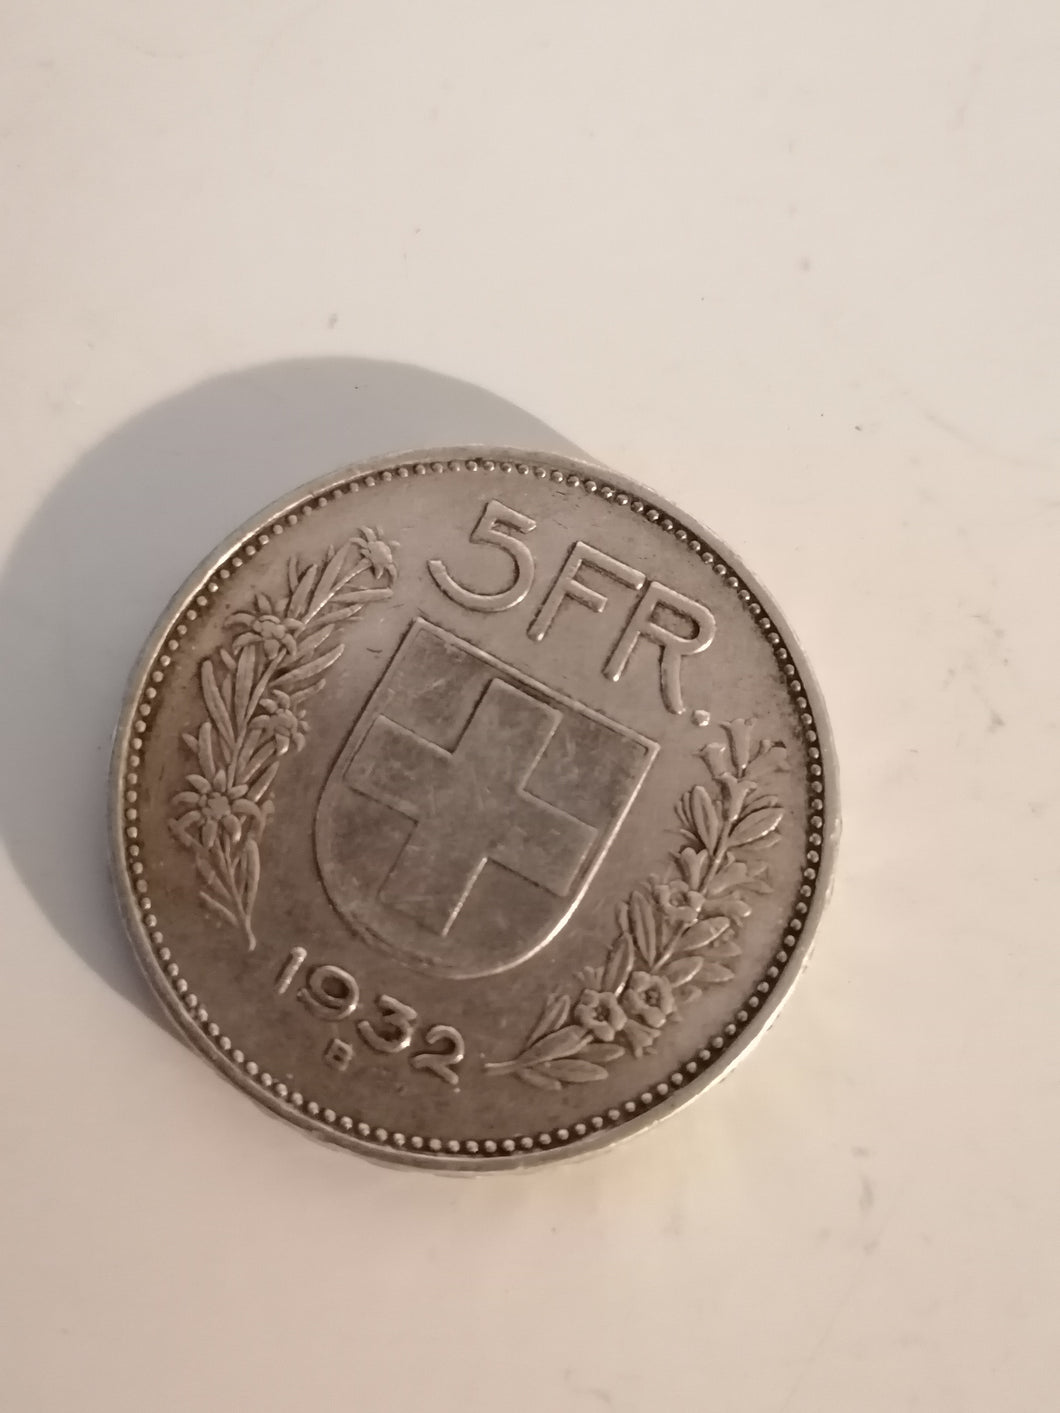 5 Franc Suisse en argent 1932